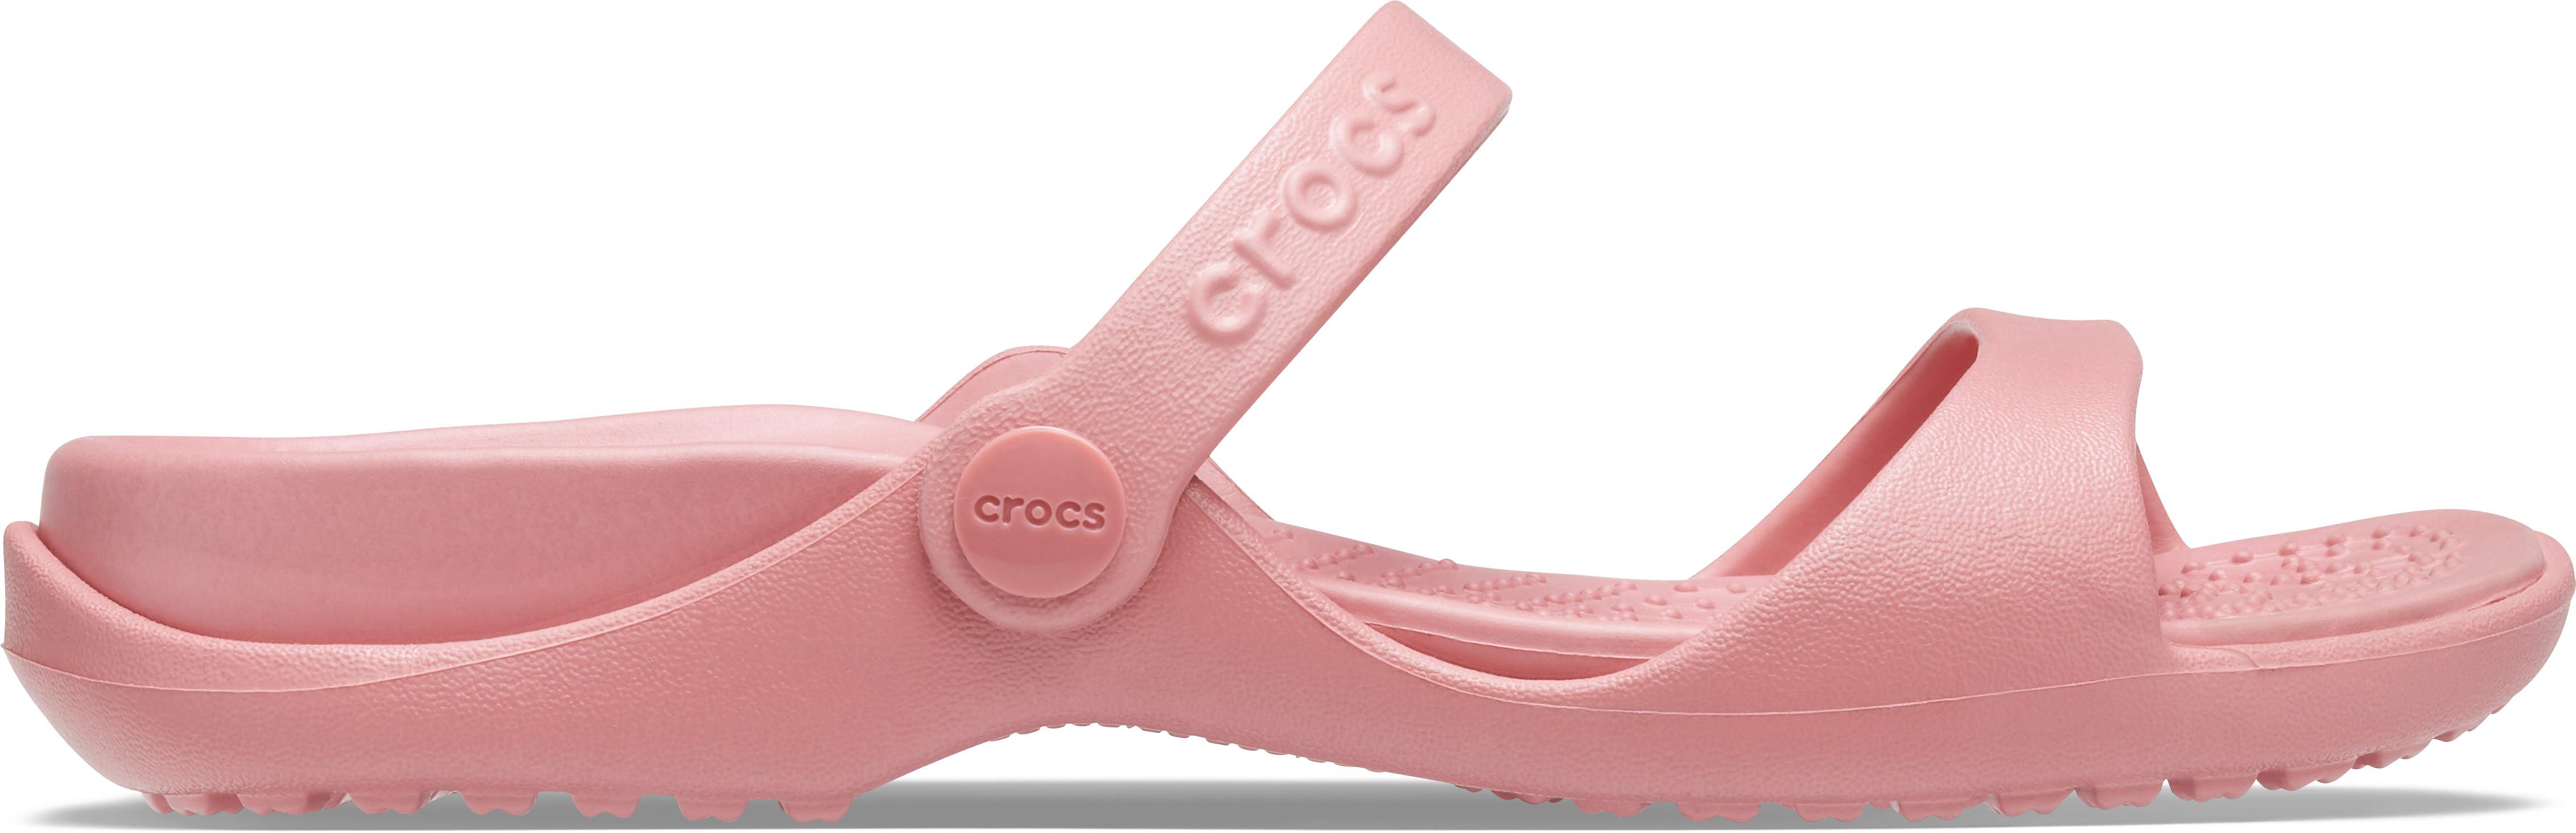 womens crocs uk